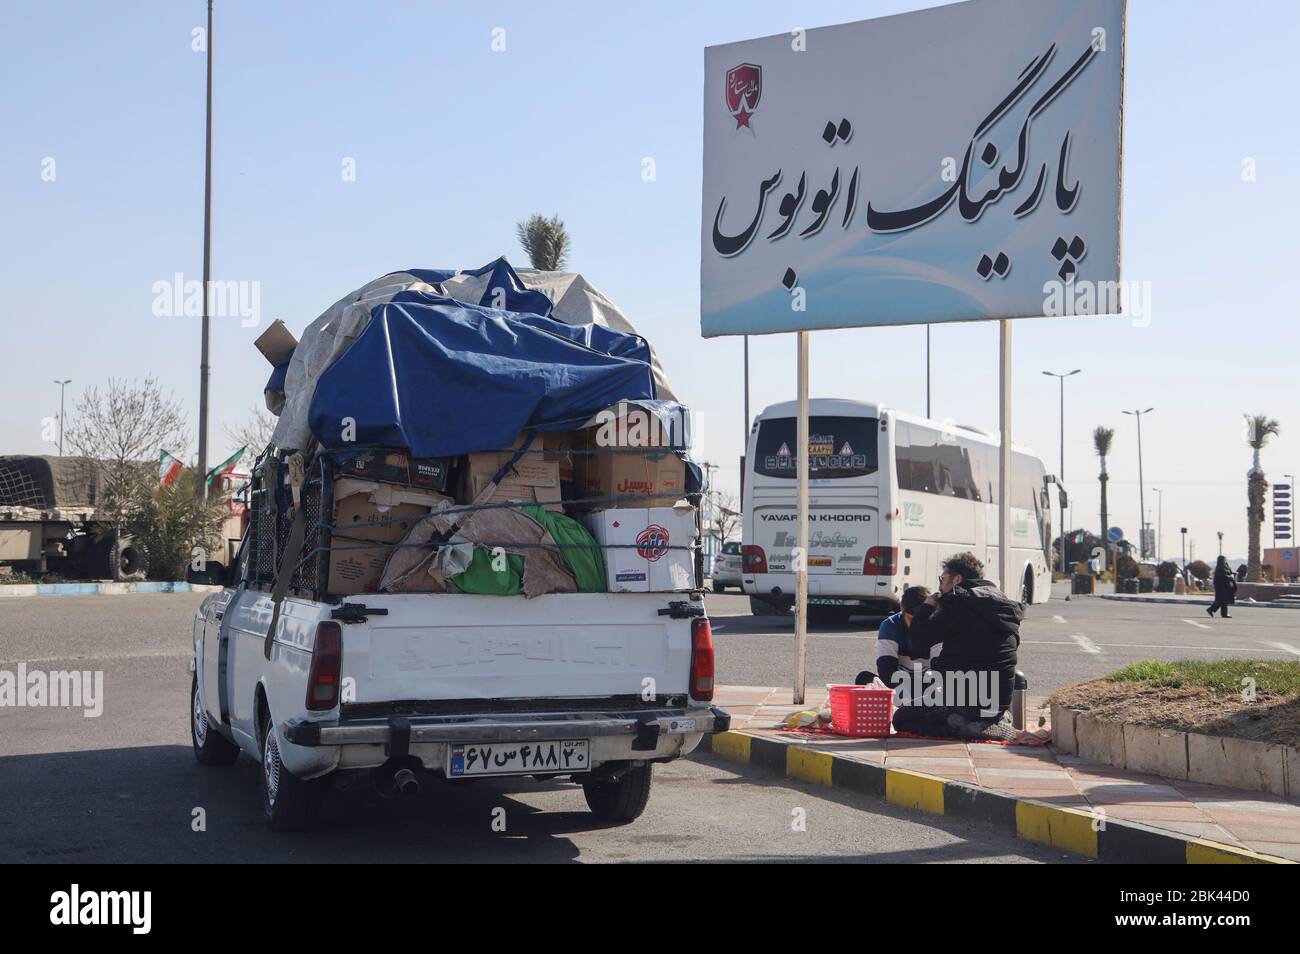 Camion pick-up completamente carico parcheggiato sulla strada mentre gli autisti stanno facendo un picnic, provincia di Isfahan, Iran, Persia, Medio Oriente Foto Stock